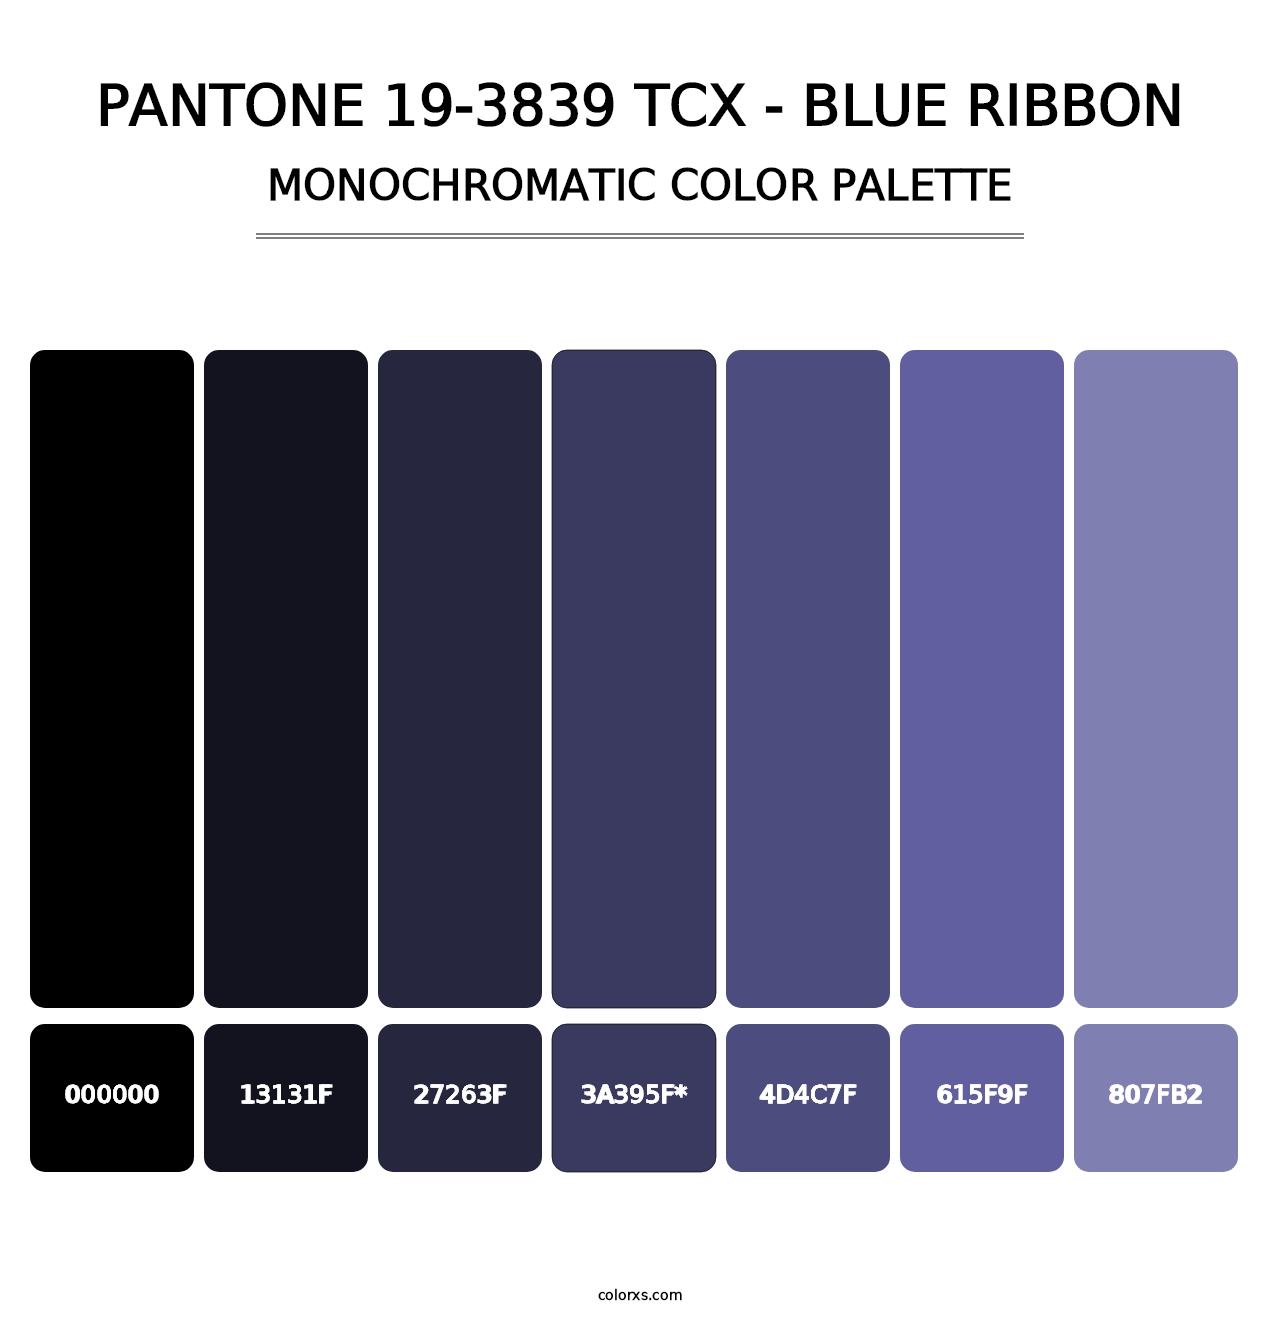 PANTONE 19-3839 TCX - Blue Ribbon - Monochromatic Color Palette